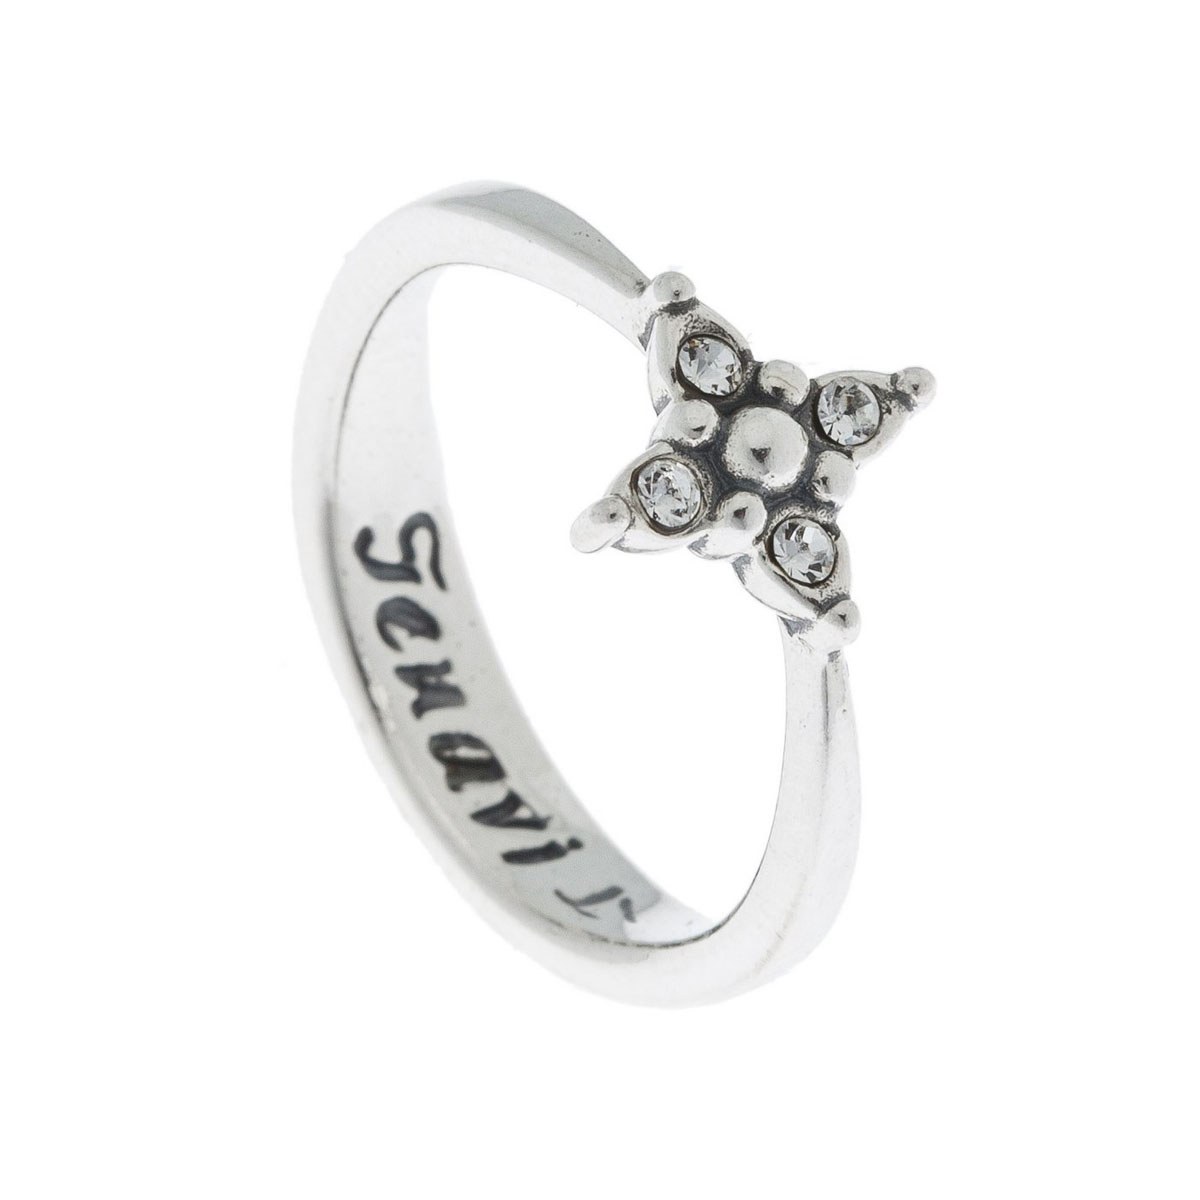 Кольцо Jenavi Эги, цвет: серебро, белый. k5013000. Размер 17